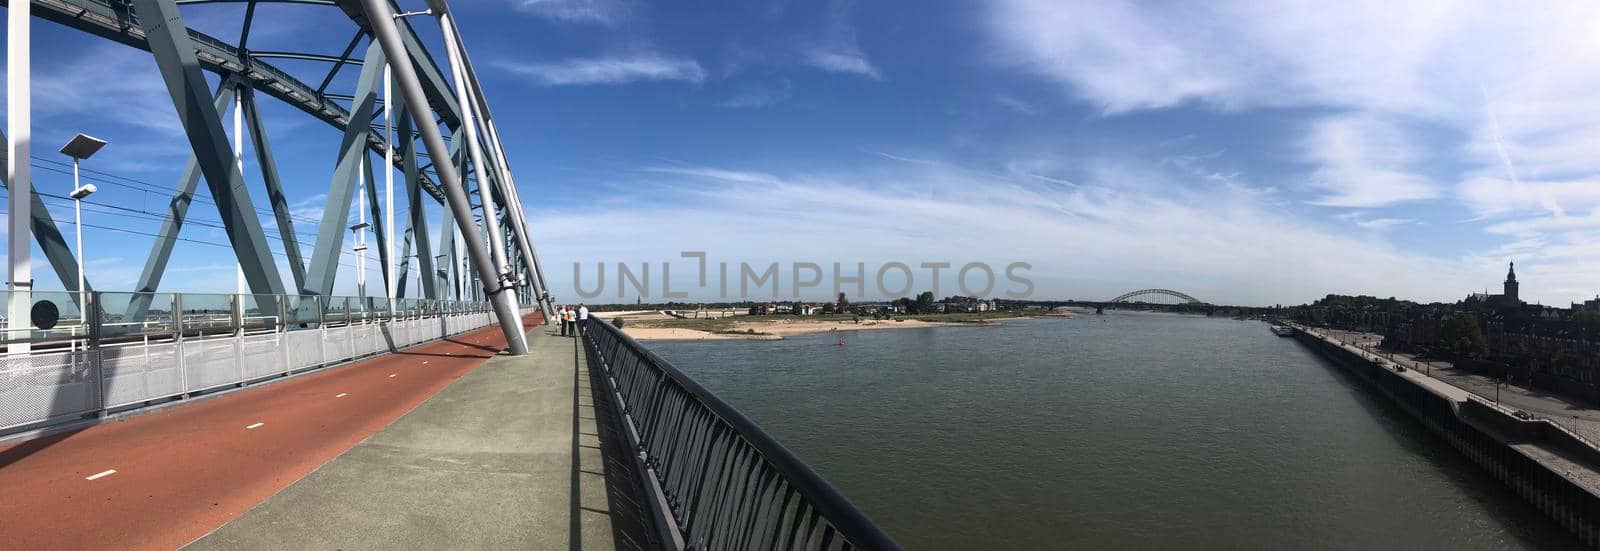 The railway bridge over the Waal river panorama in Nijmegen, Gelderland The Netherlands